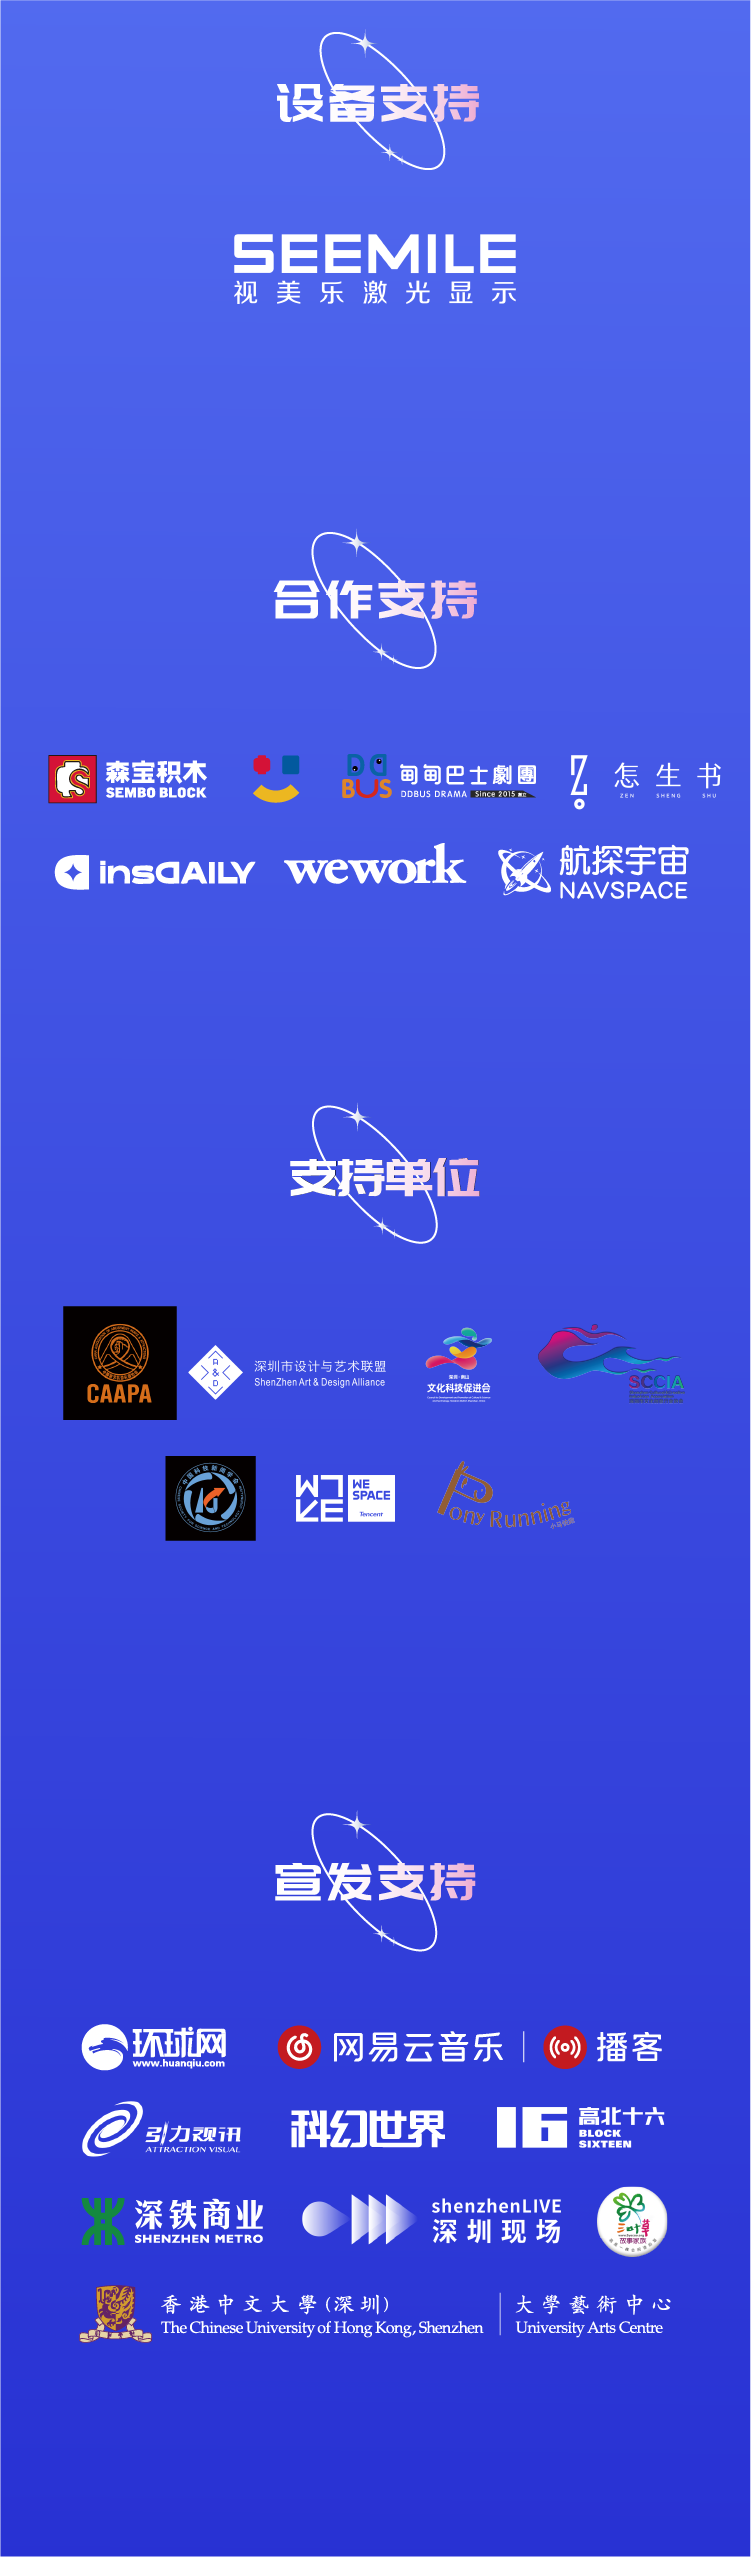 2021中国航天文创CASCI官方艺术特展 |《漫无边界》-深圳站